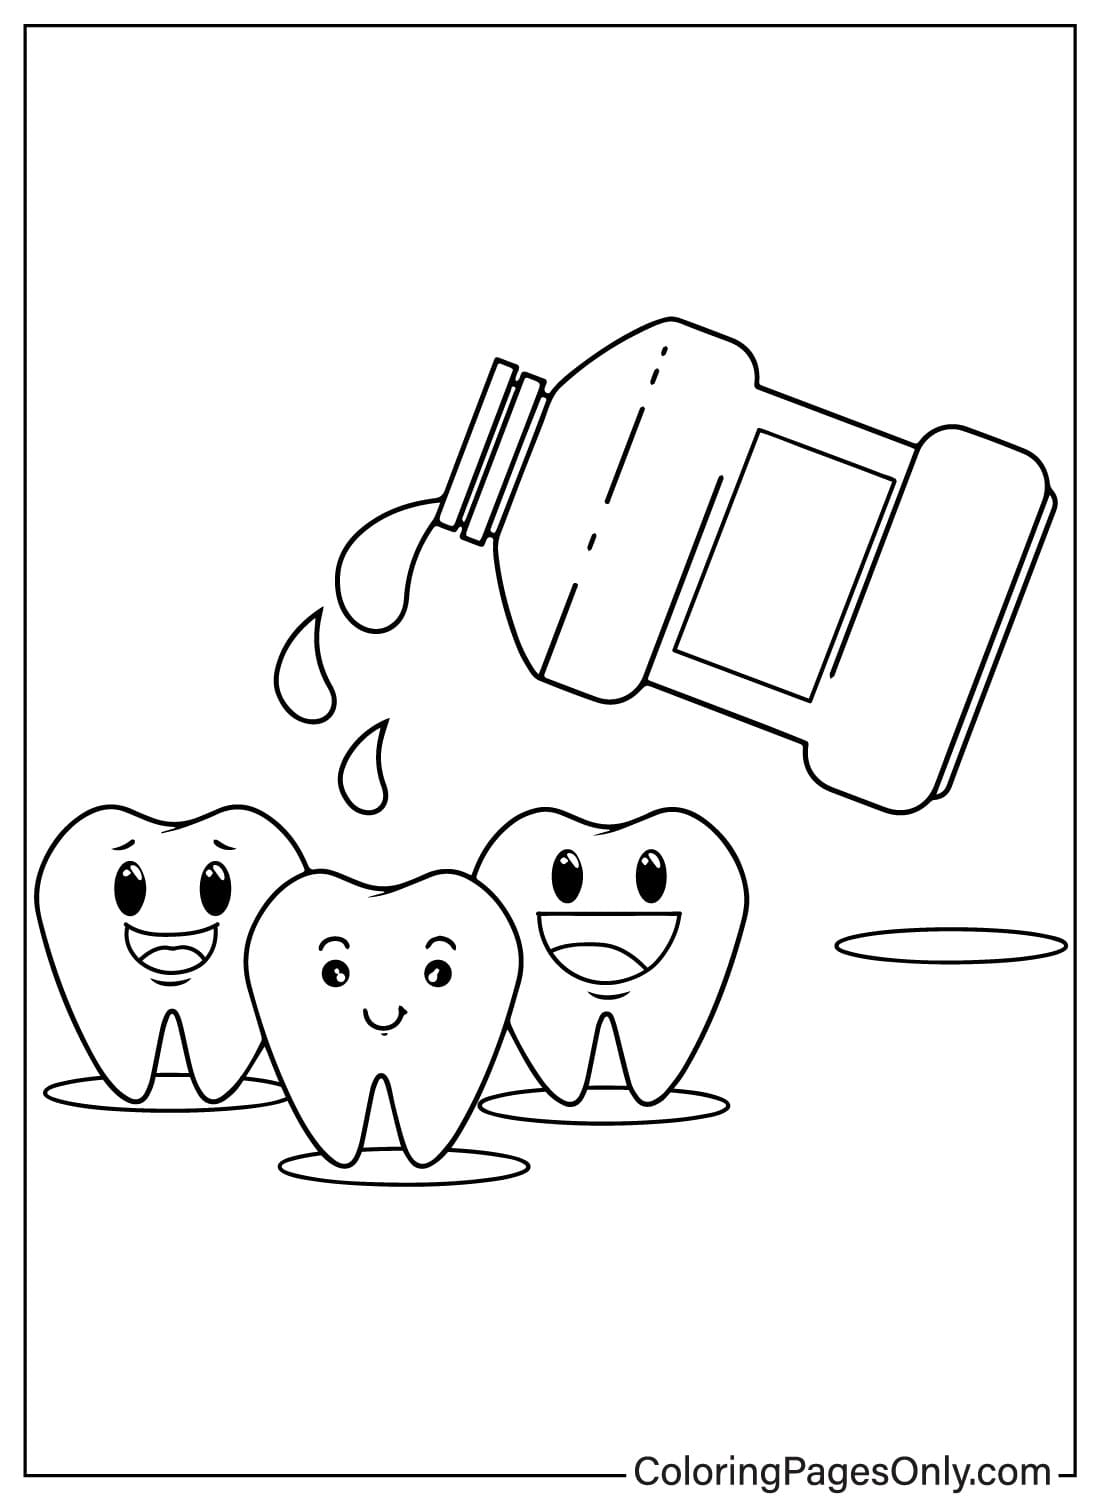 Pagina da colorare di immagini dei denti